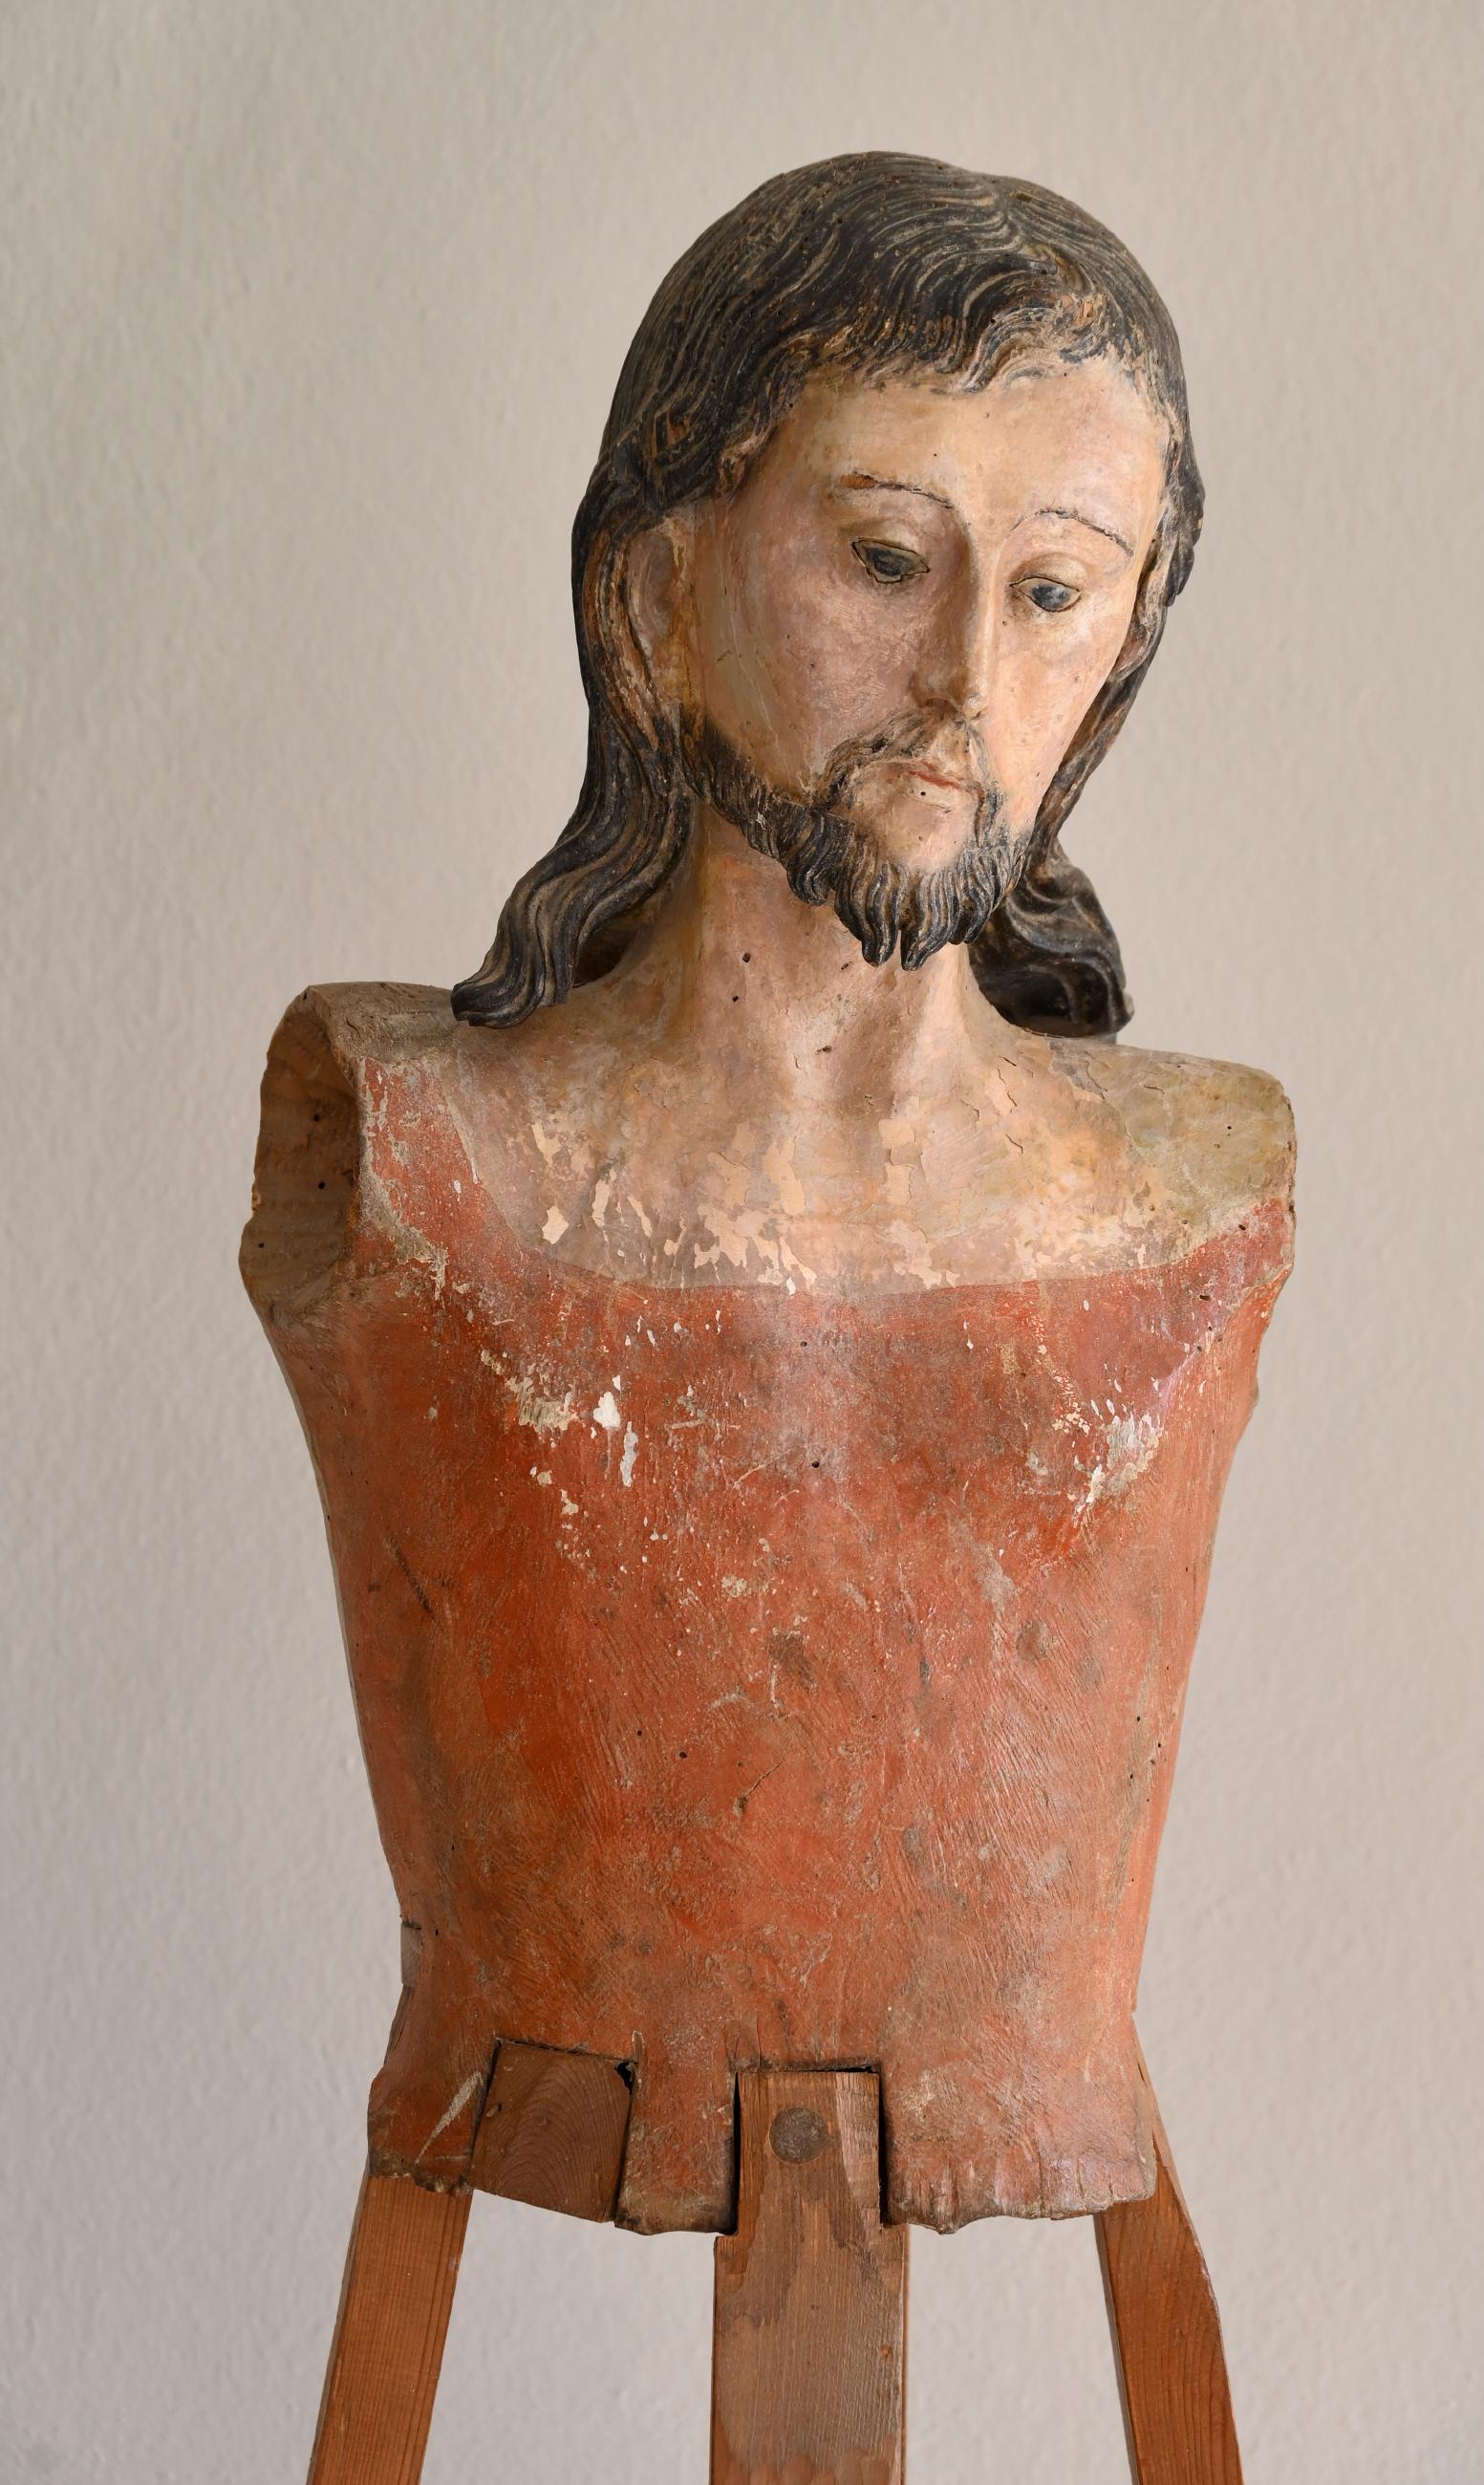 Une inhabituelle et rare figure de procession ou de conférencier du 17ème siècle, également appelée Mannequins. Sculpté dans le bois et de très bonne qualité. Une élaboration détaillée et particulière du buste, la partie inférieure est faite d'une